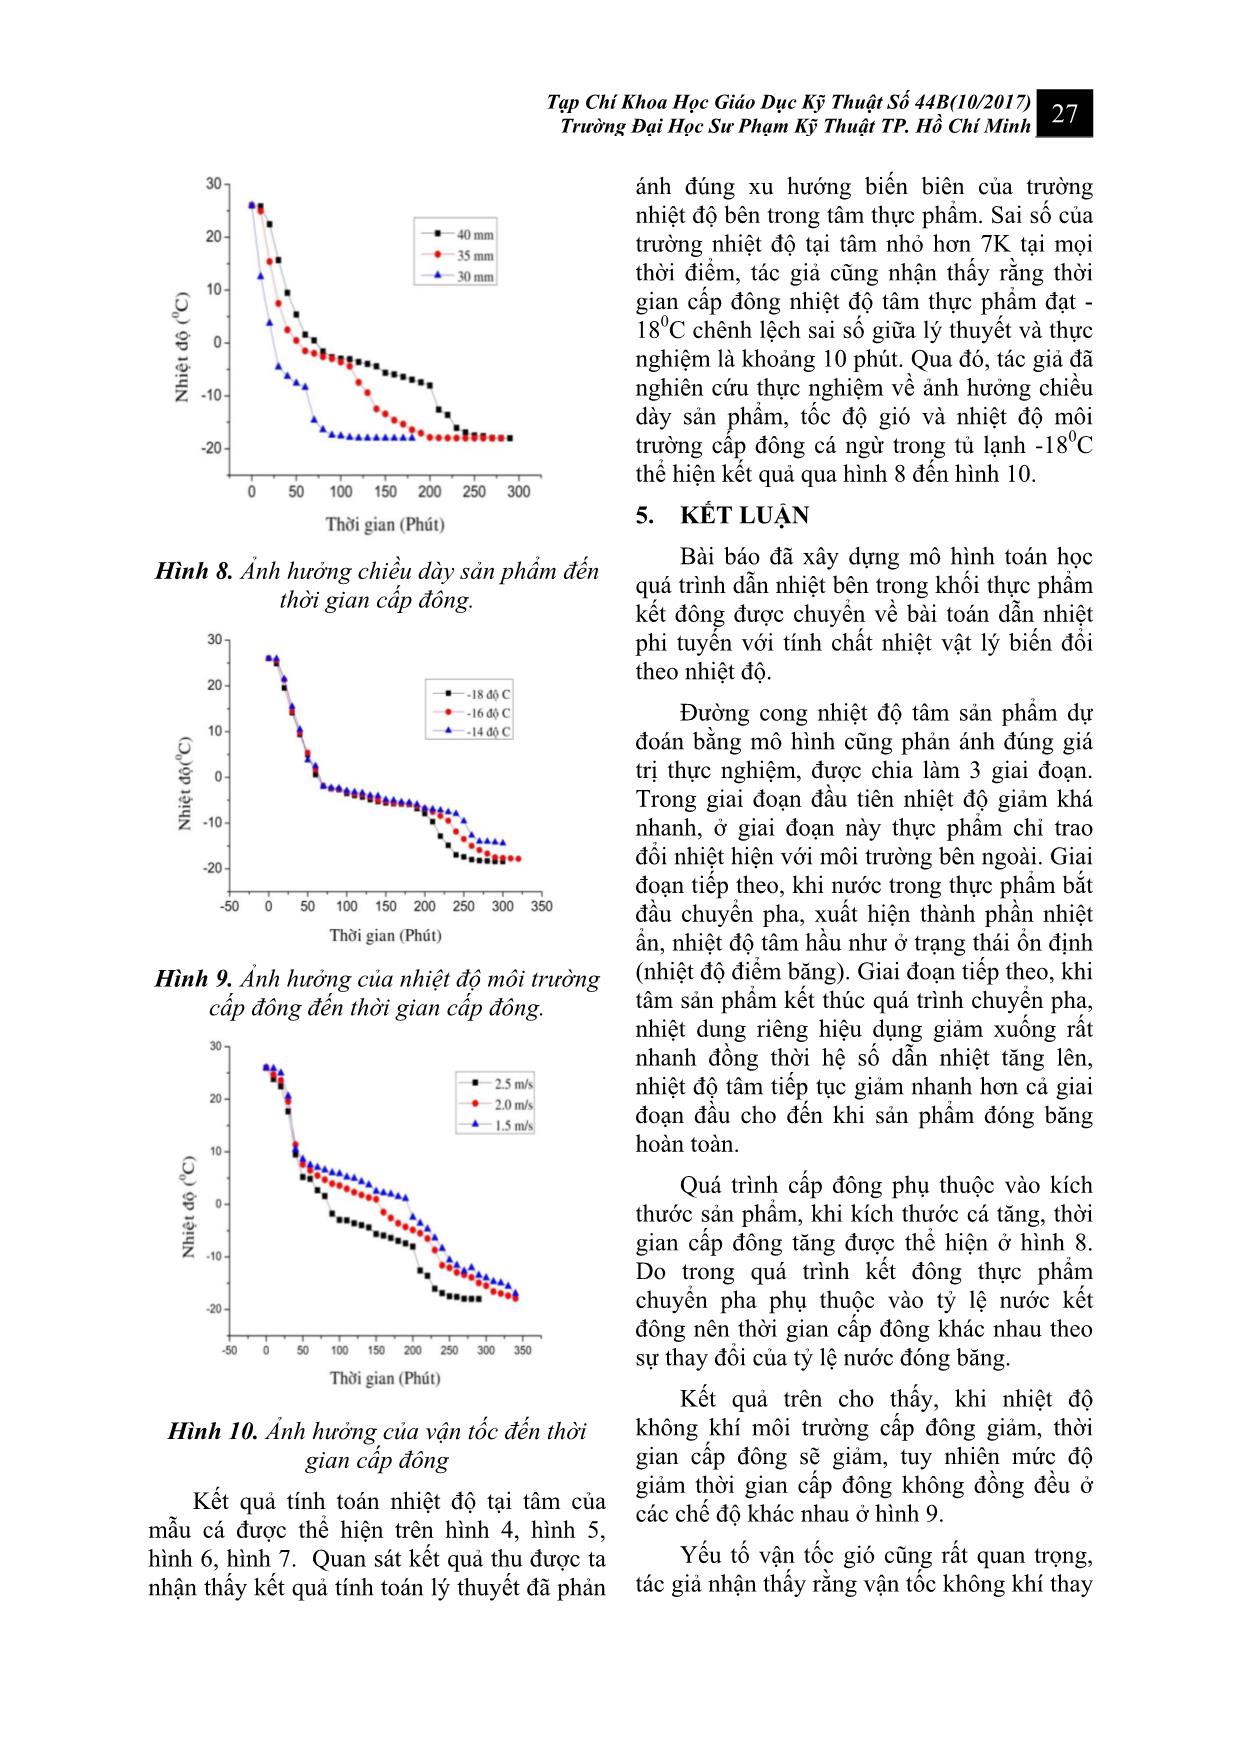 Mô phỏng quá trình truyền nhiệt cấp đông cá ngừ trong tủ lạnh 3 sao (-180C) trang 5